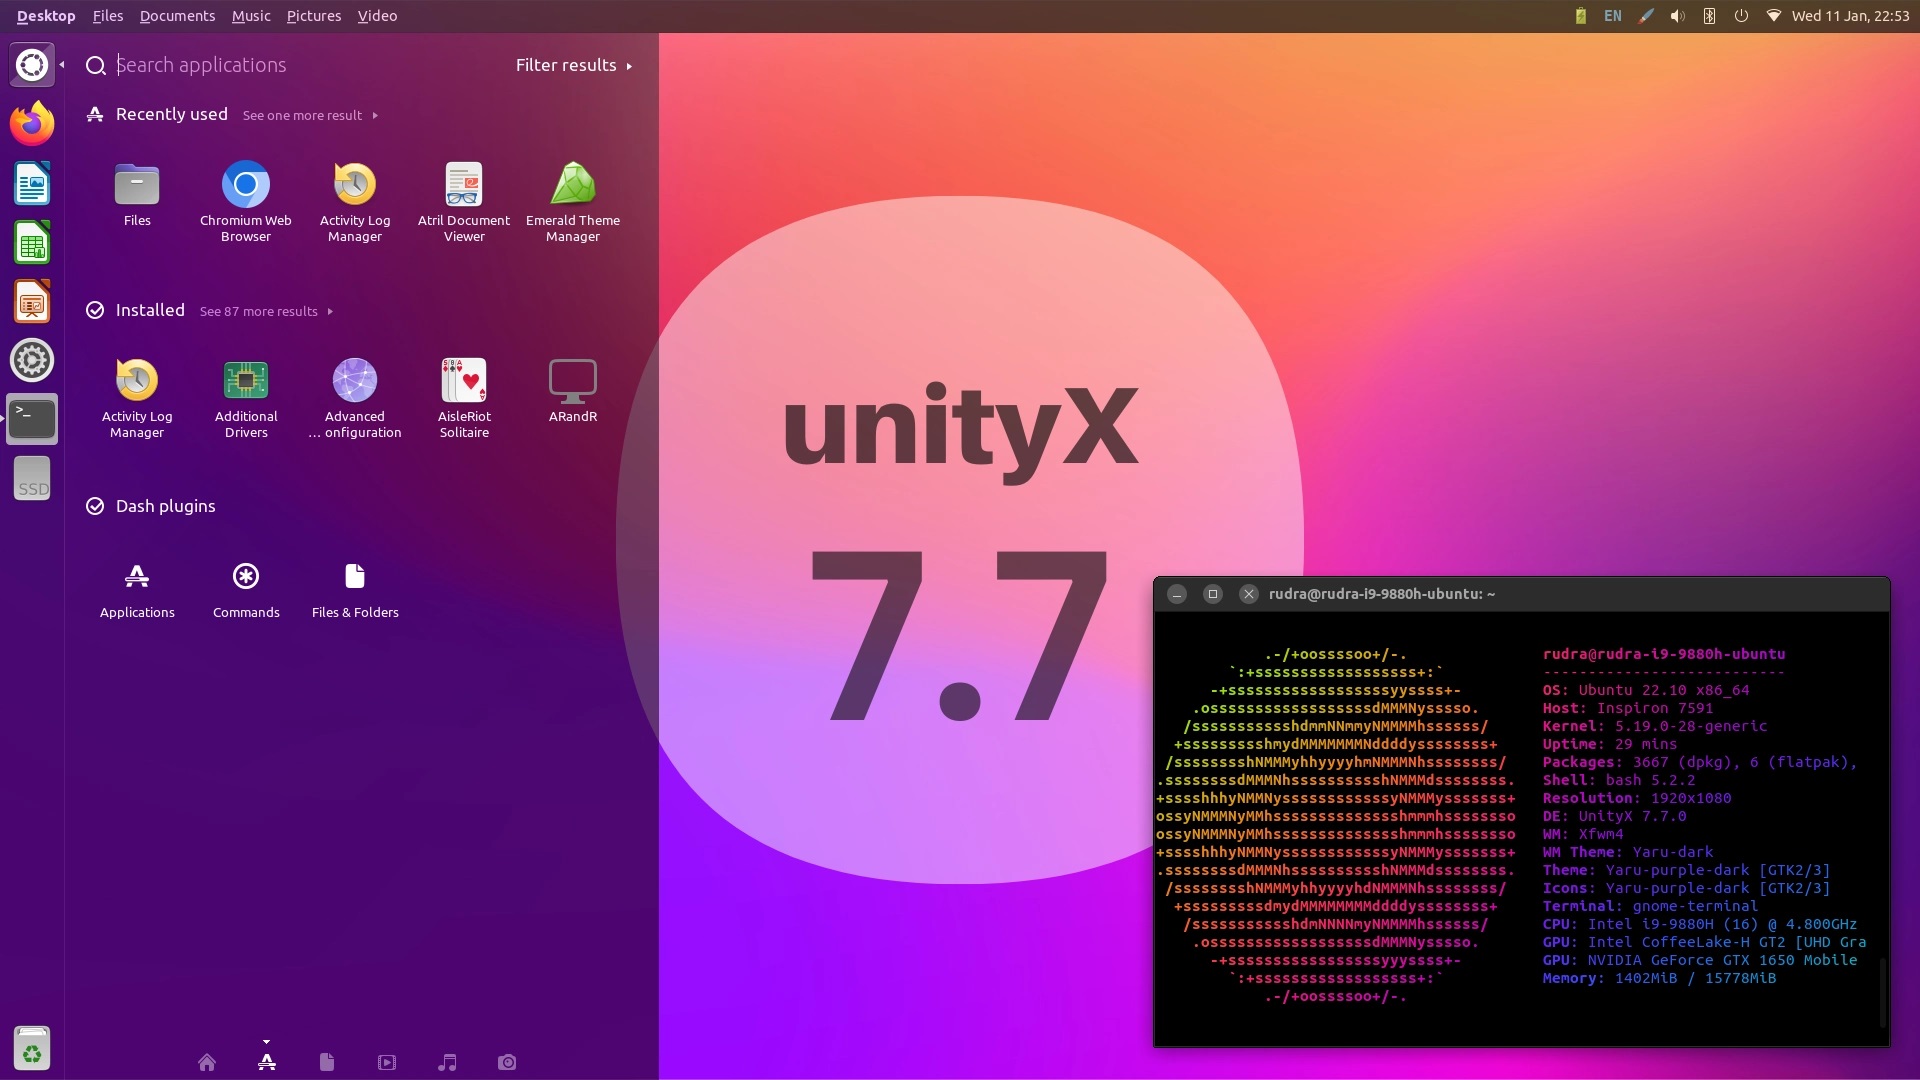 Unity 7.7桌面环境将获得支持Wayland的UnityX样式